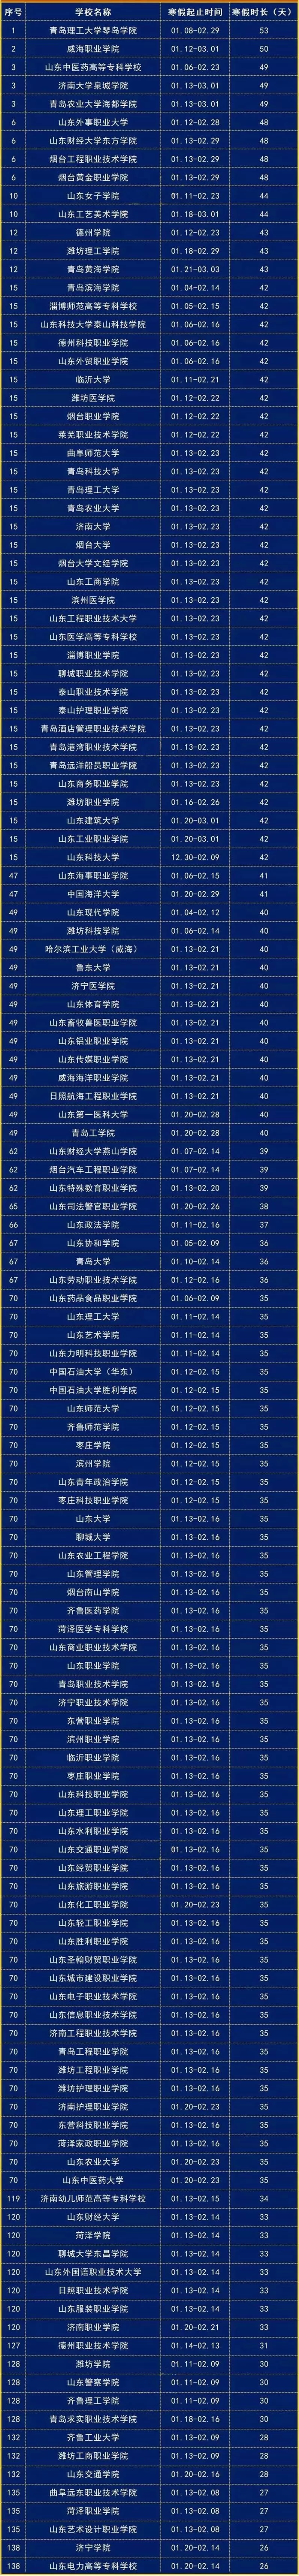 2019电视台排行榜_2019中国100座城市宜居指数排名发布潍坊位列十五